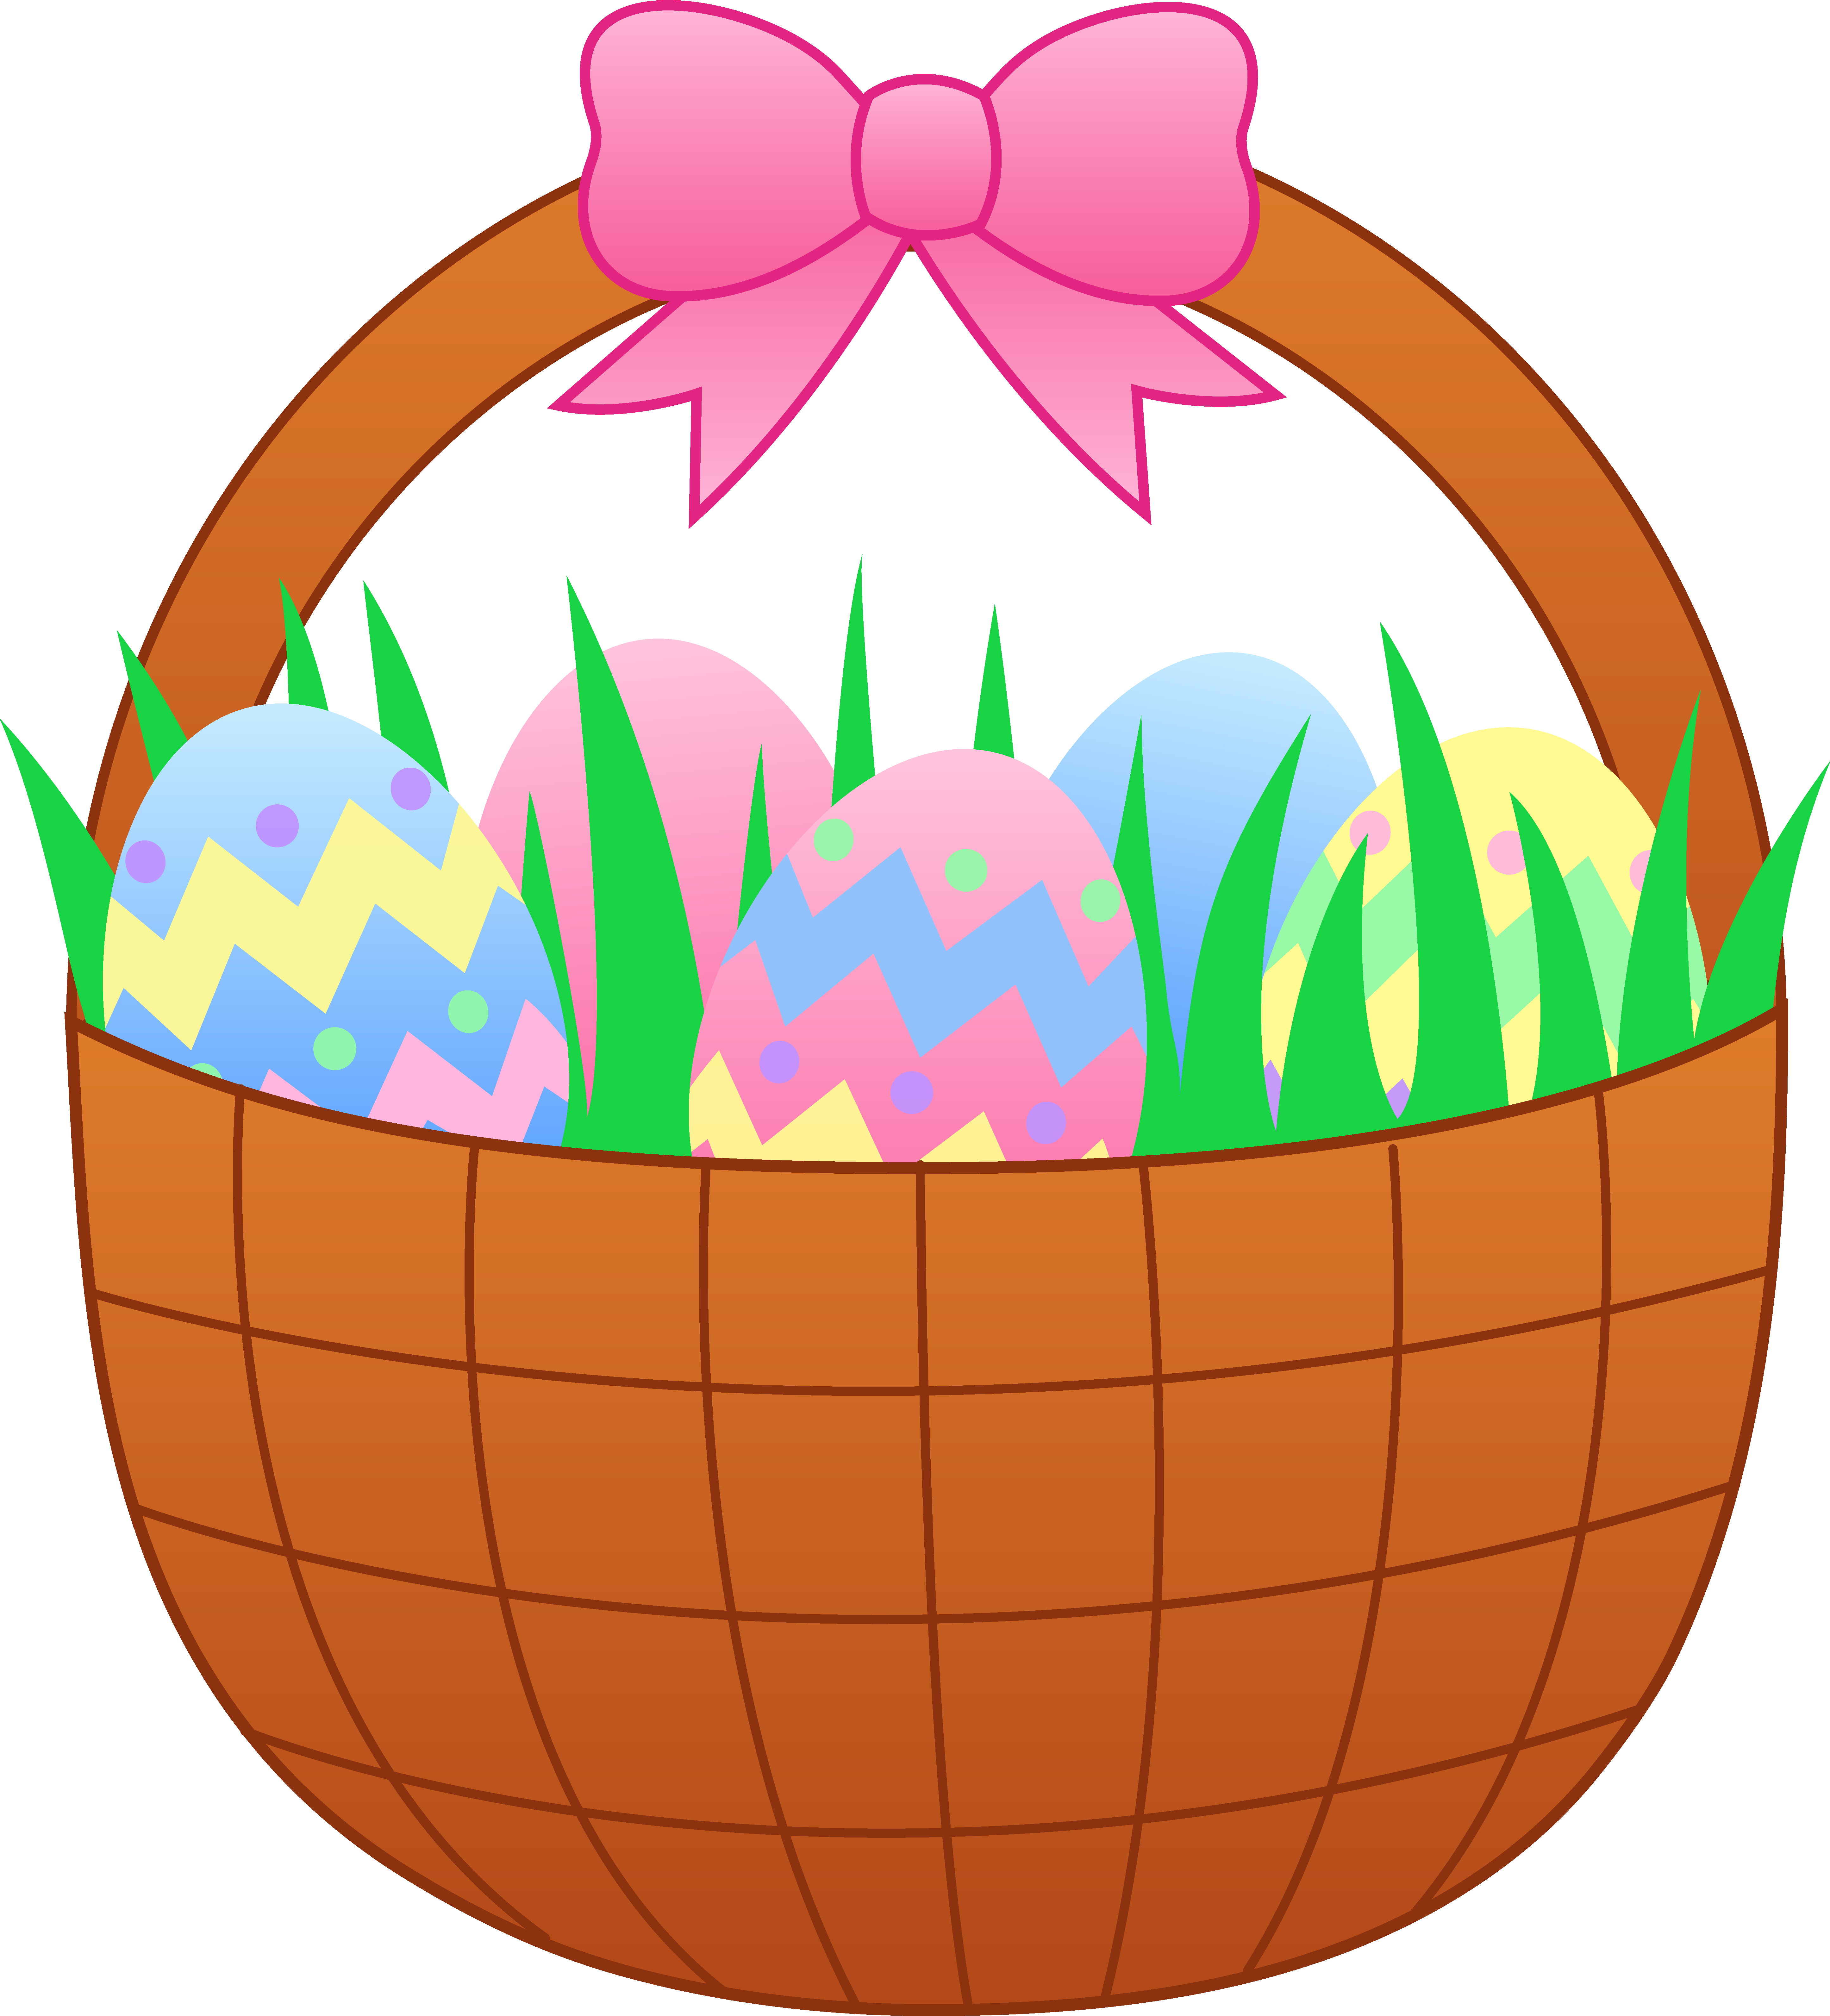 Images of Easter Egg Cartoon - Jefney